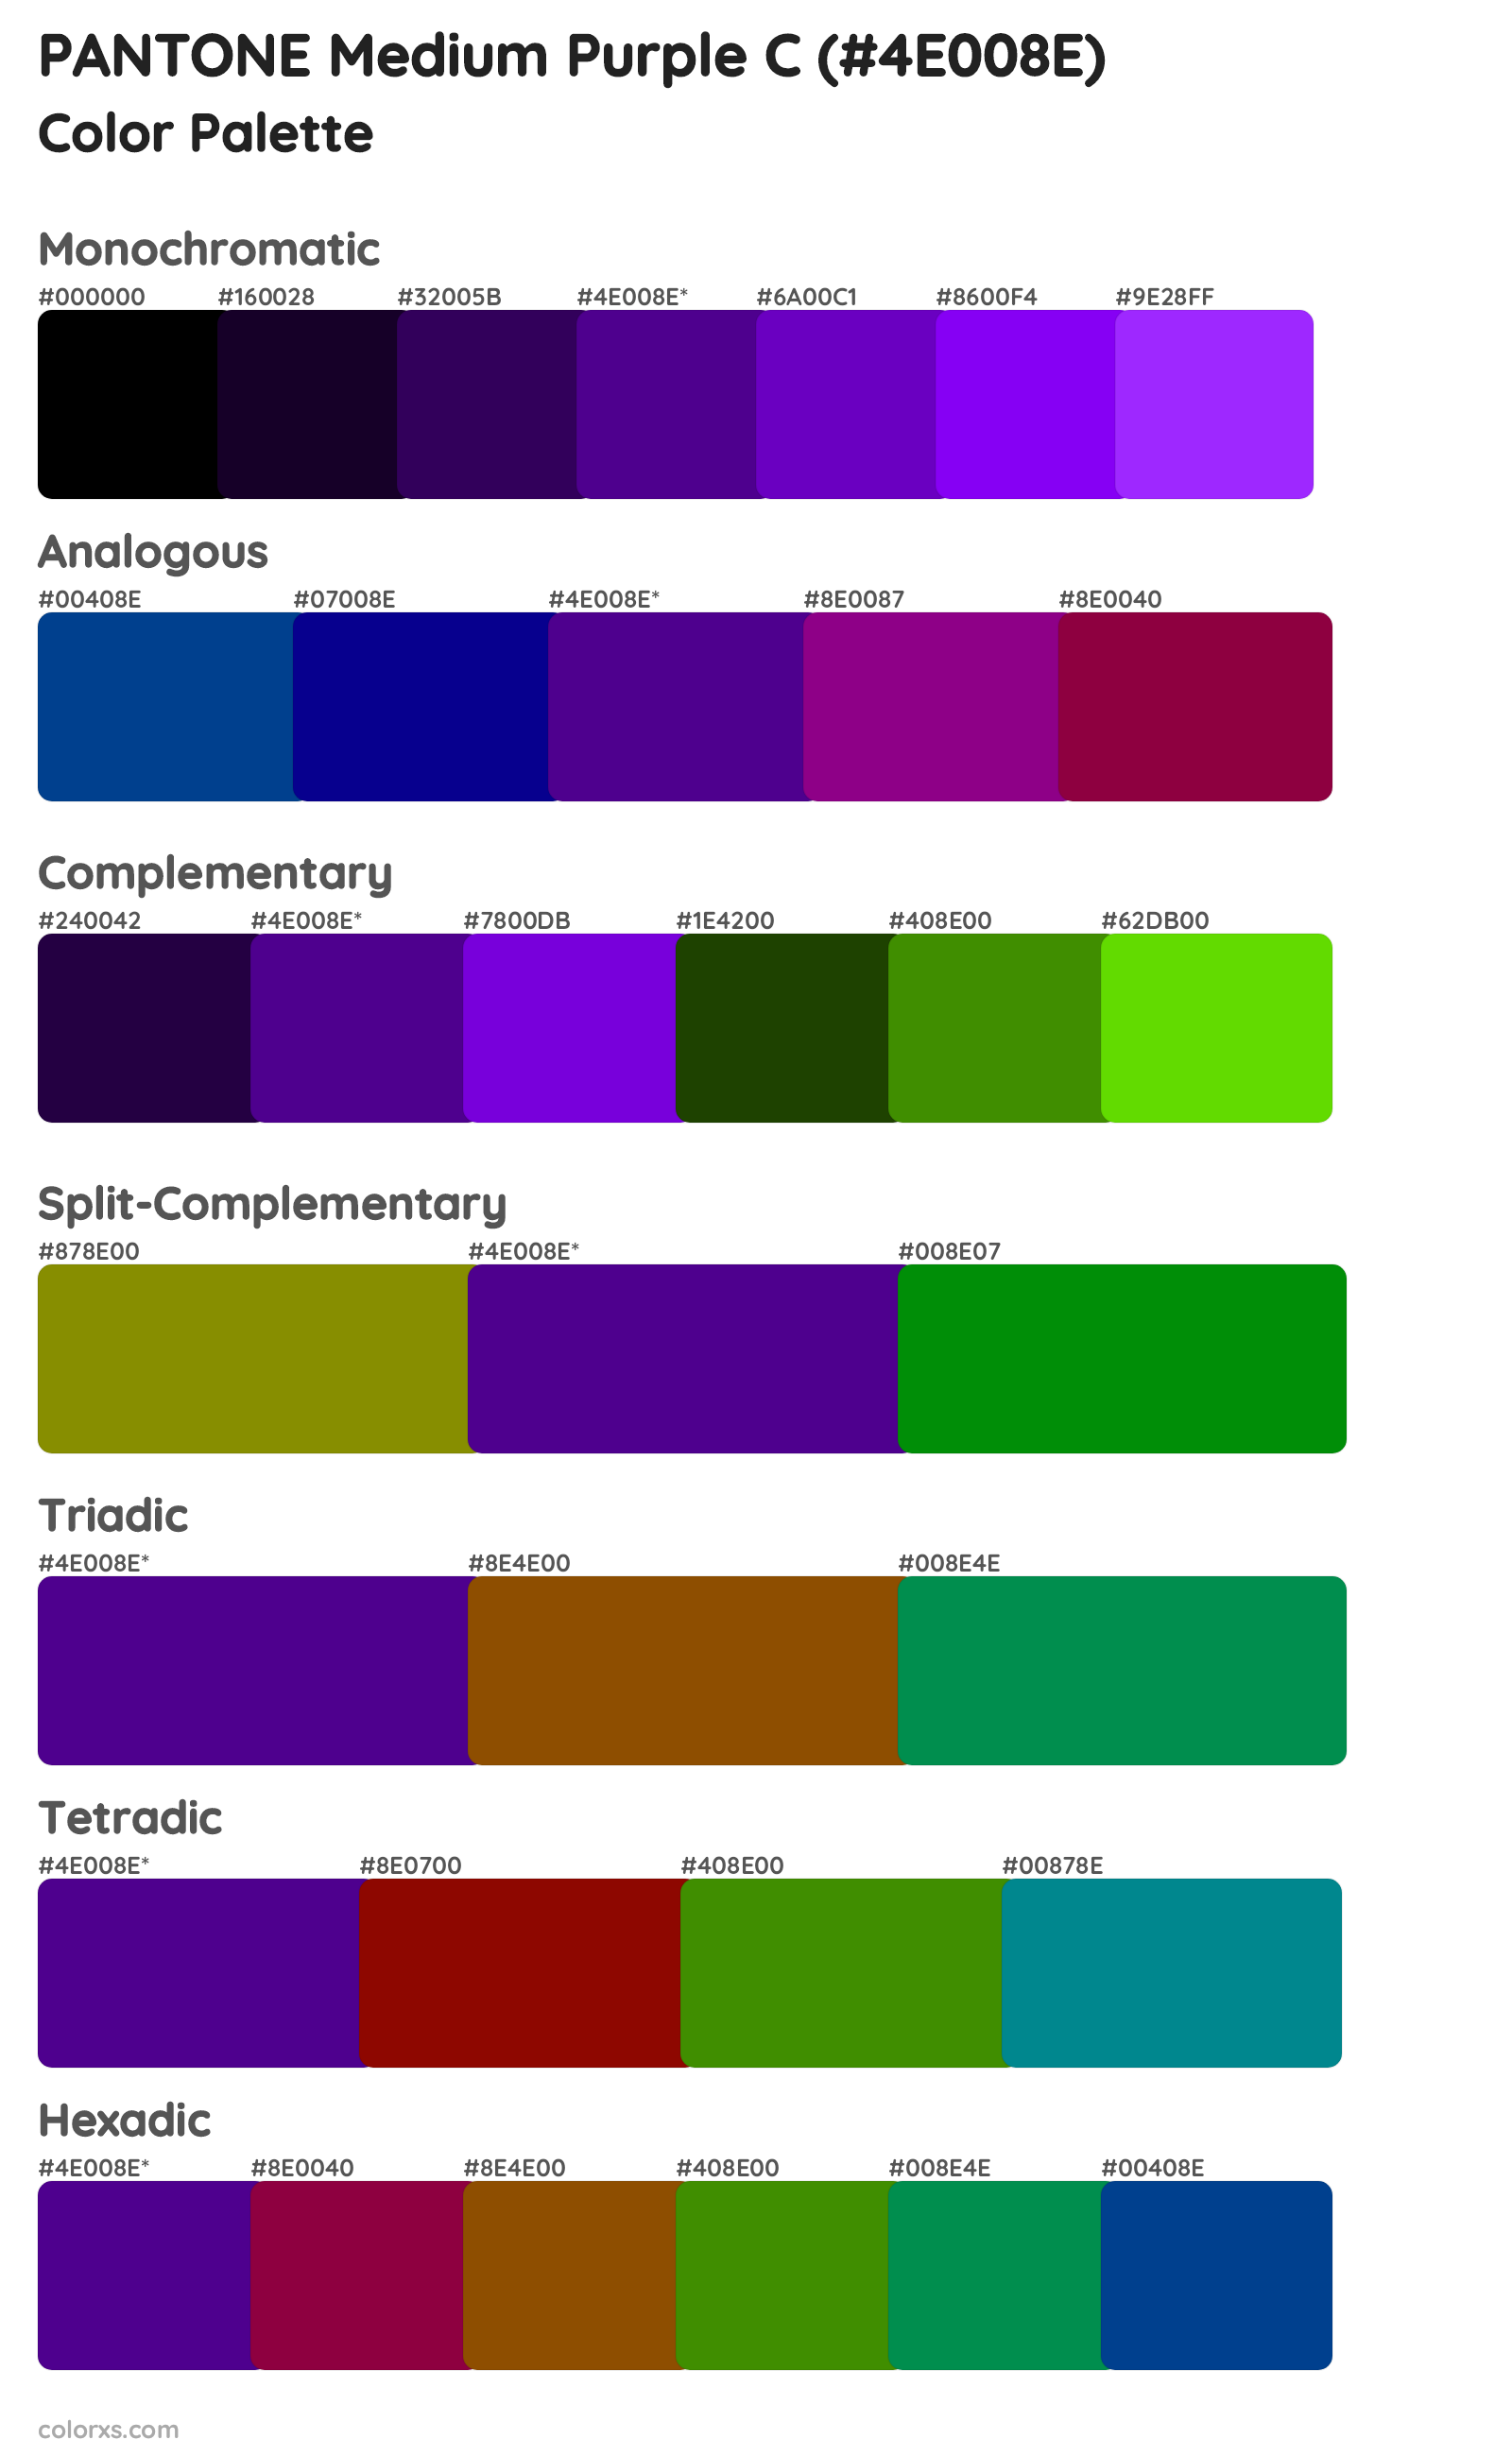 PANTONE Medium Purple C Color Scheme Palettes